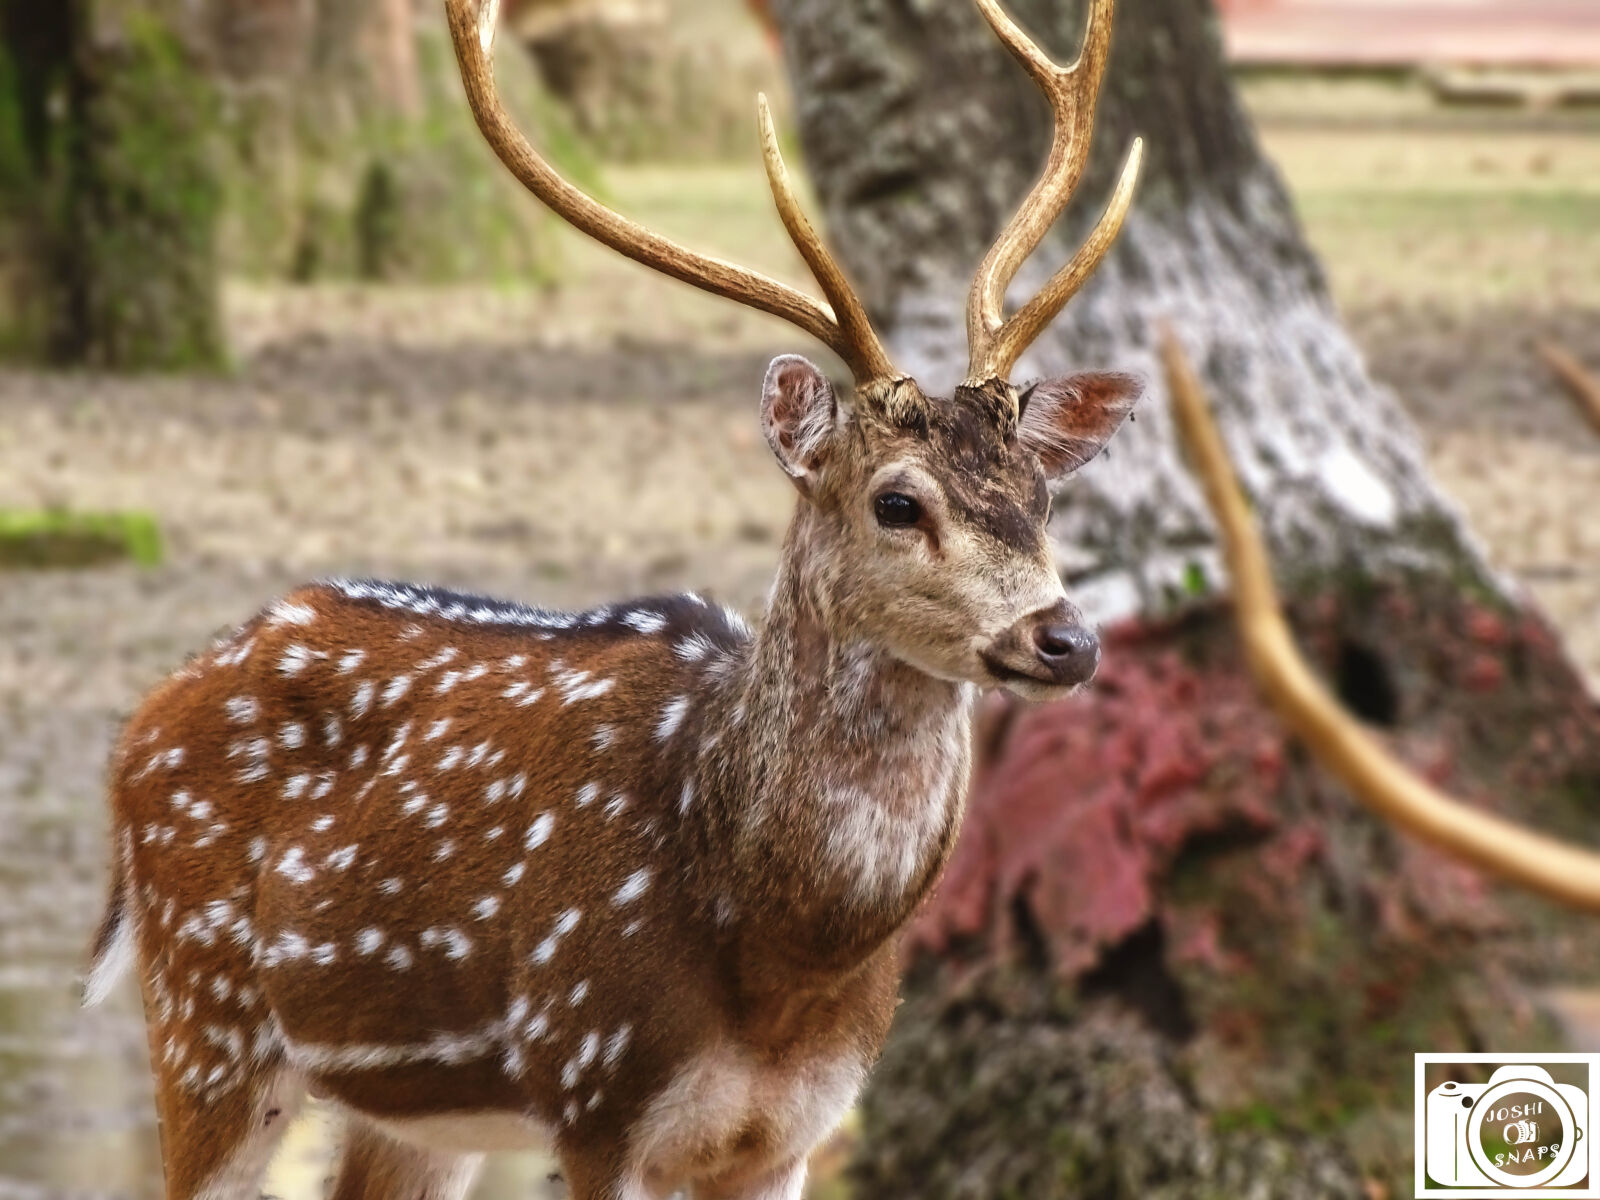 Sony Cyber-shot DSC-HX400V sample photo. Animal, deer, spots, spotted photography